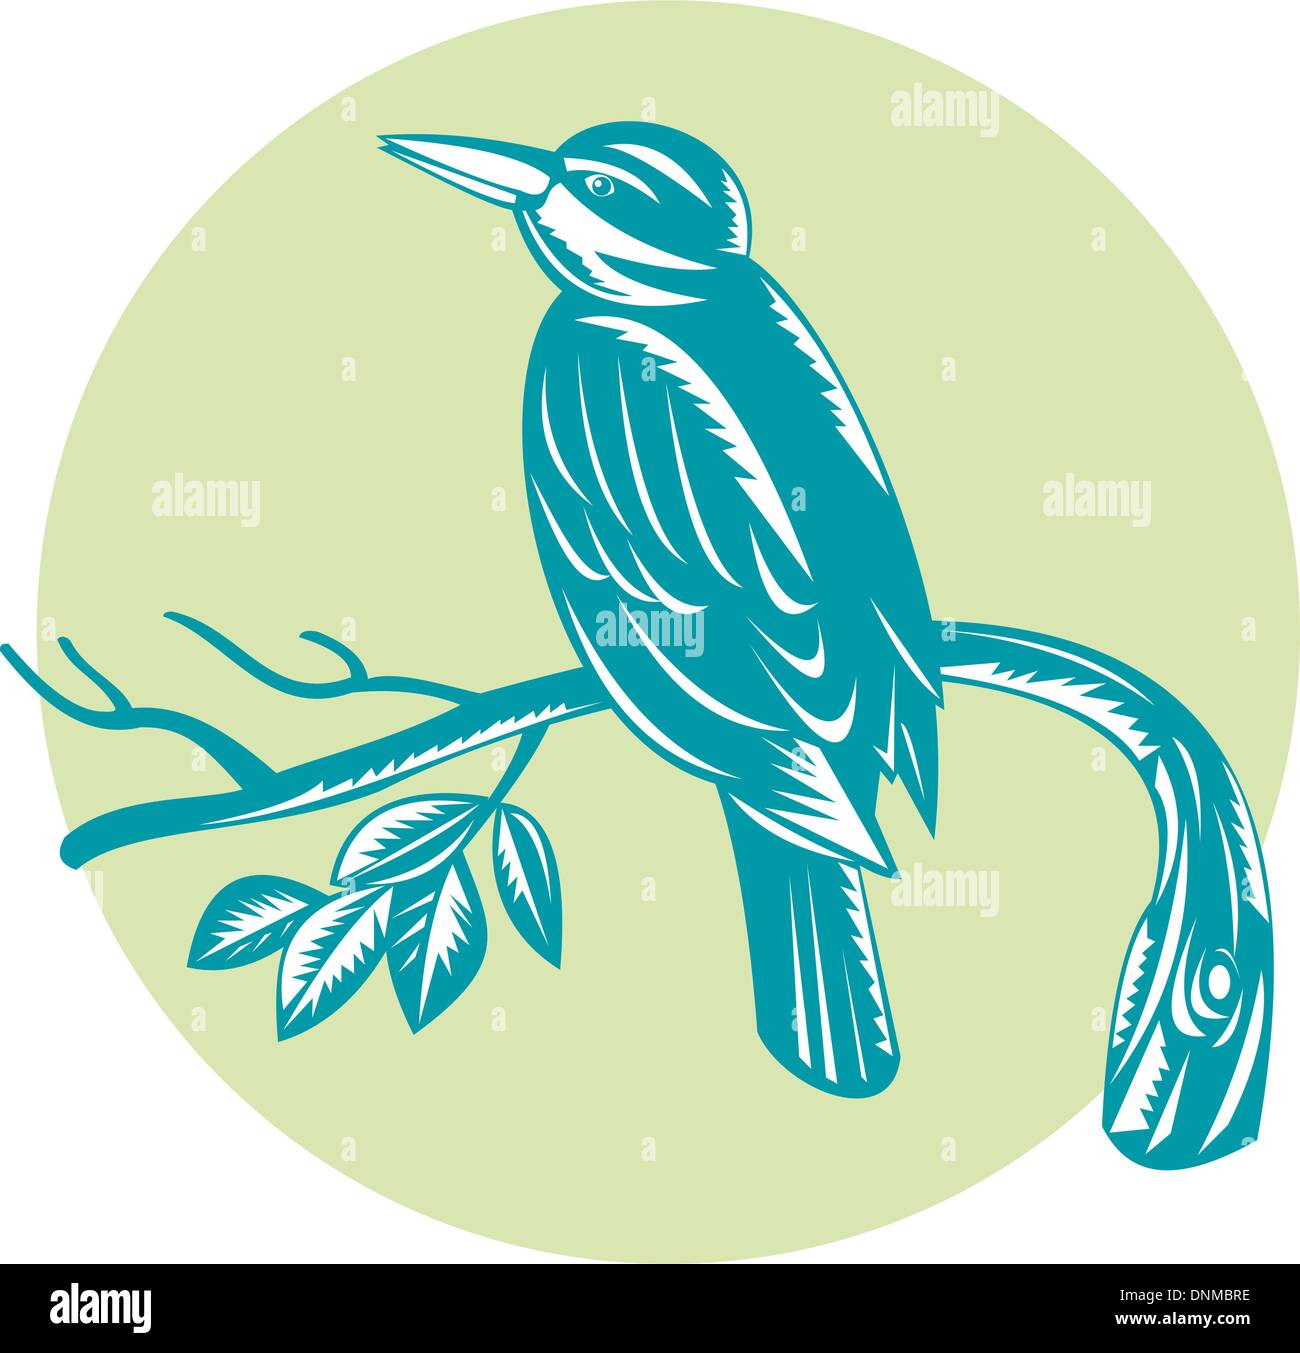 Illustrazione di un kingfisher bird perch sul ramo retrò xilografia stile. Illustrazione Vettoriale